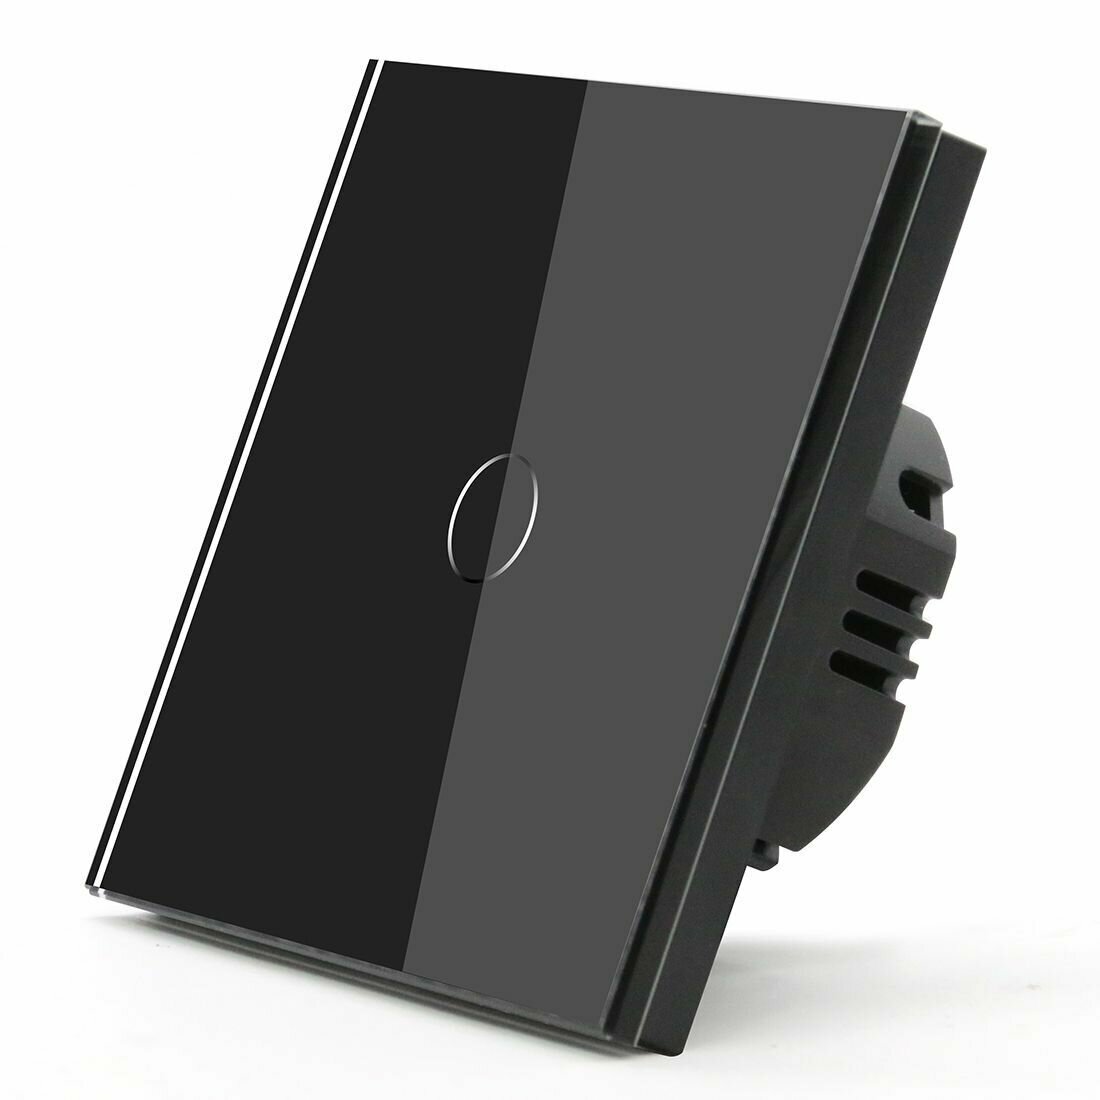 Сенсорный выключатель 1 клавиша 1 пост (1G) панель матовое стекло 86х86 мм цвет матовый черный